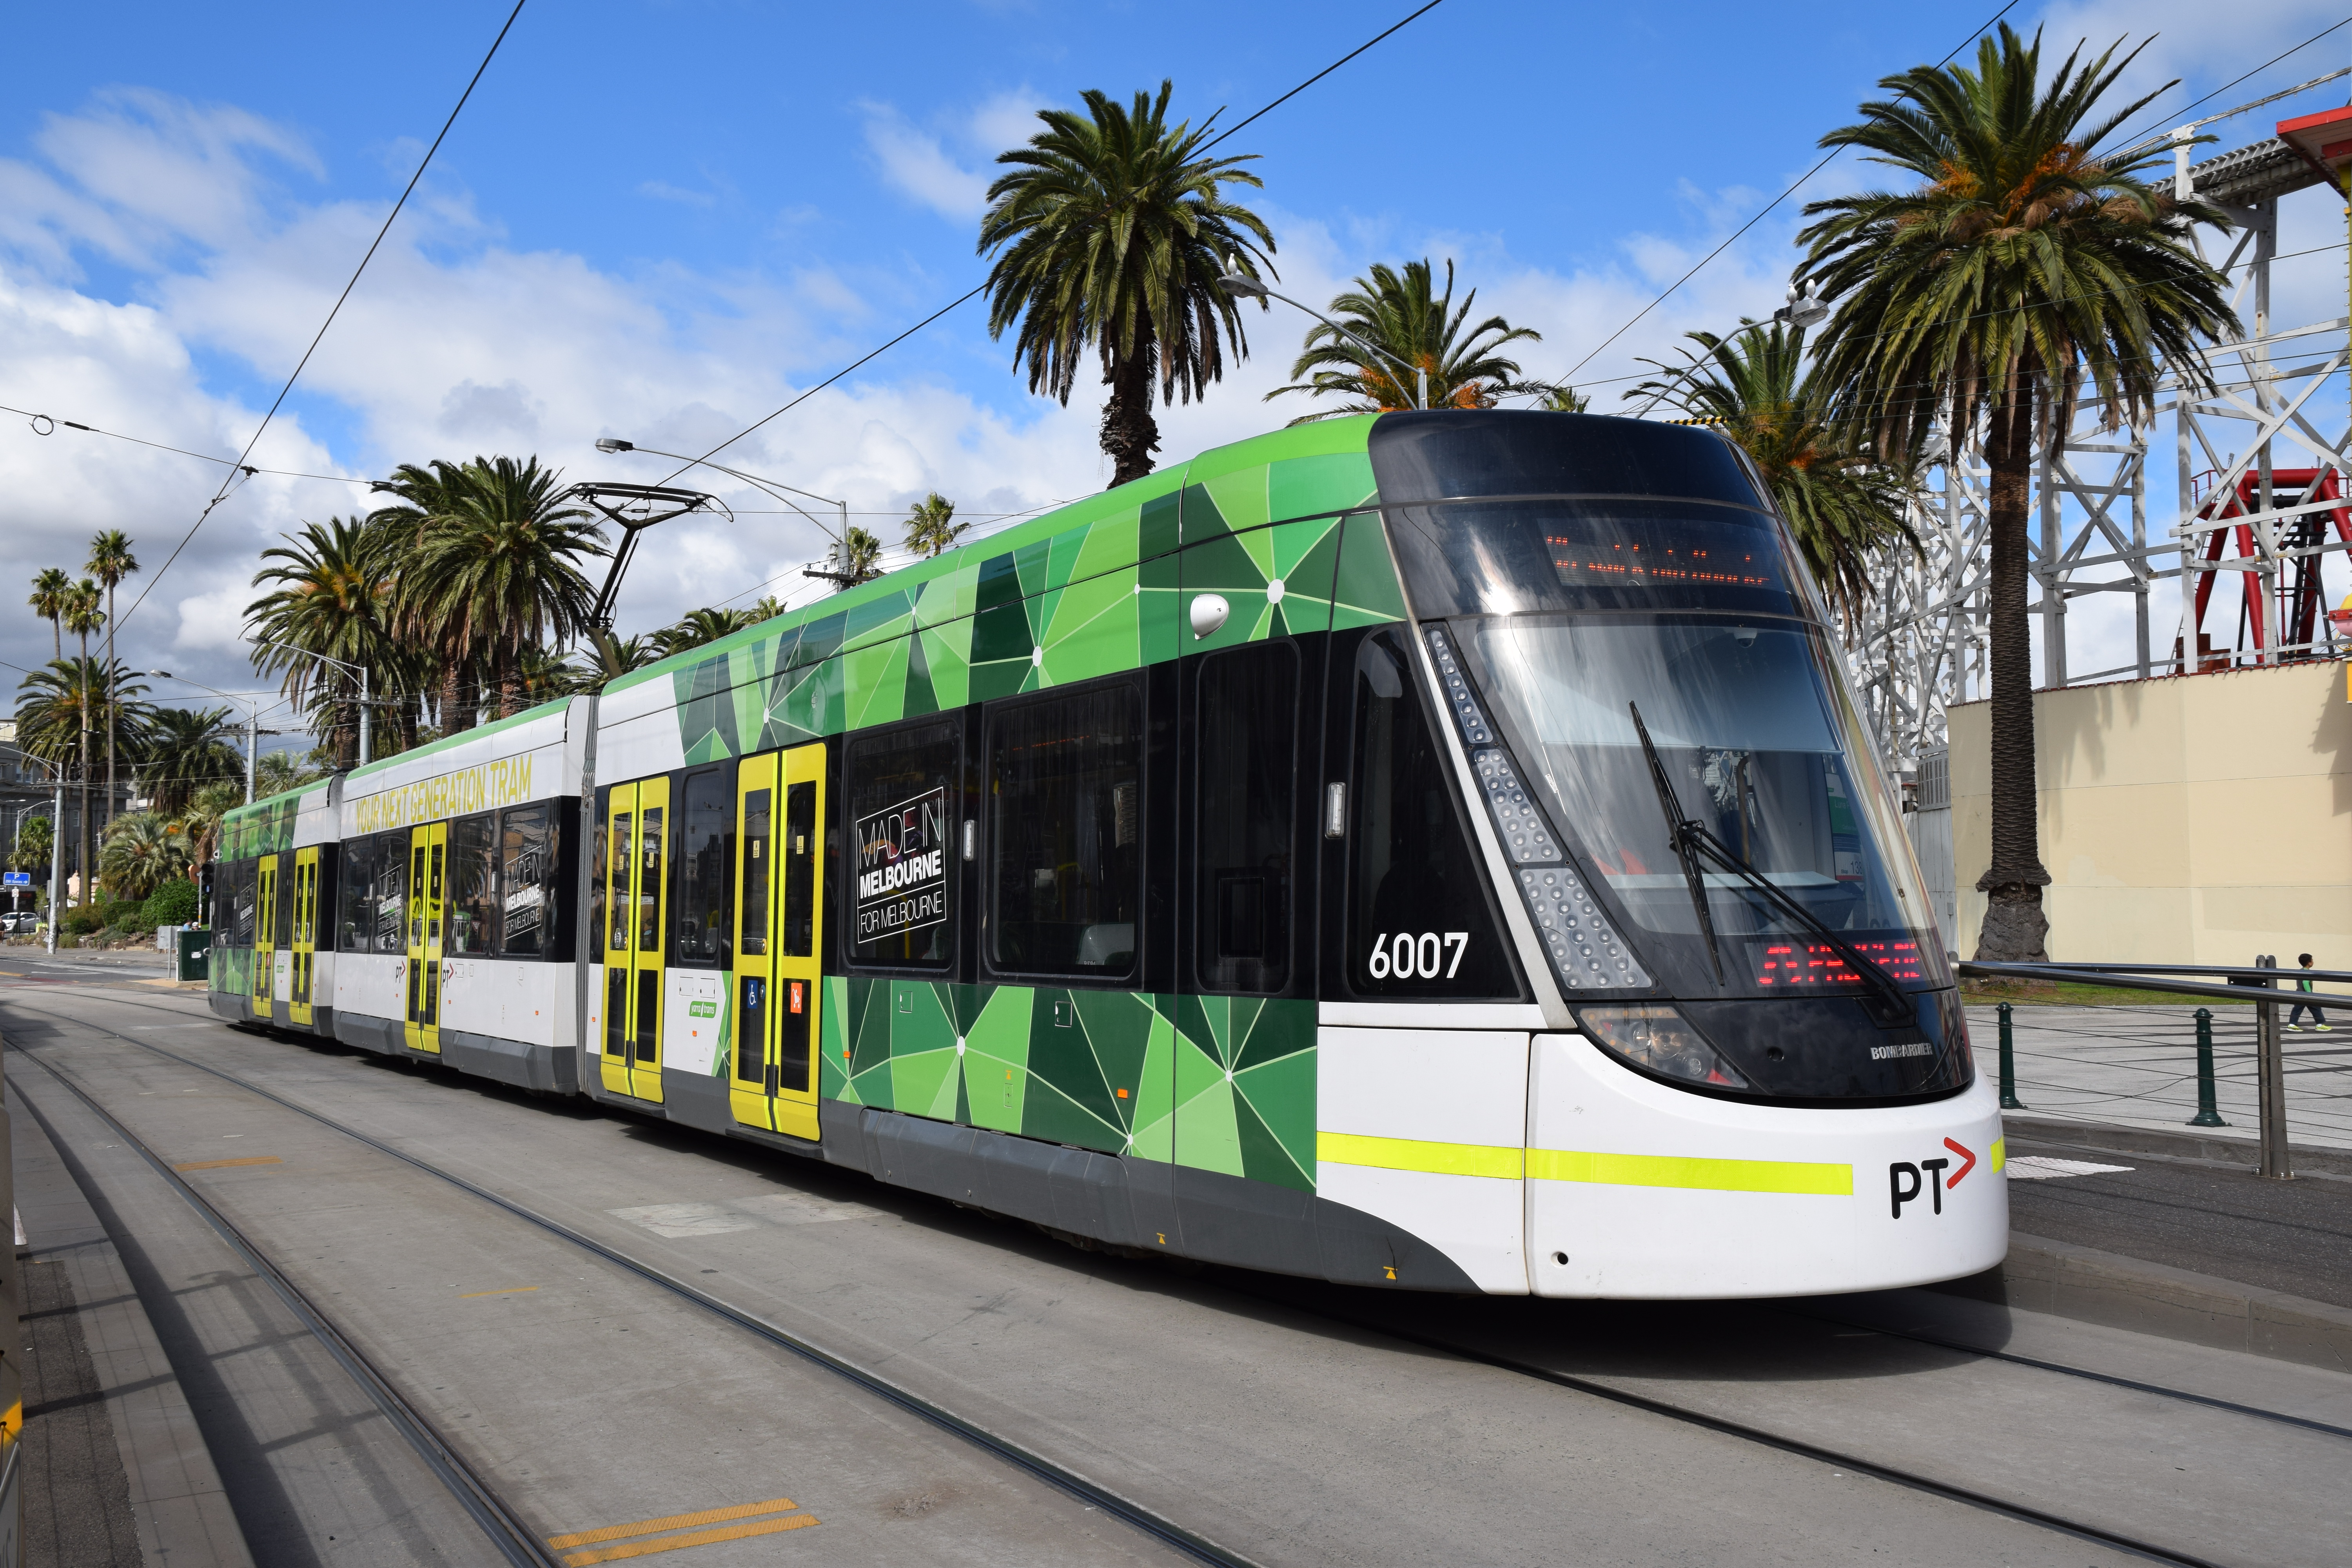 E-class Melbourne tram - Wikipedia